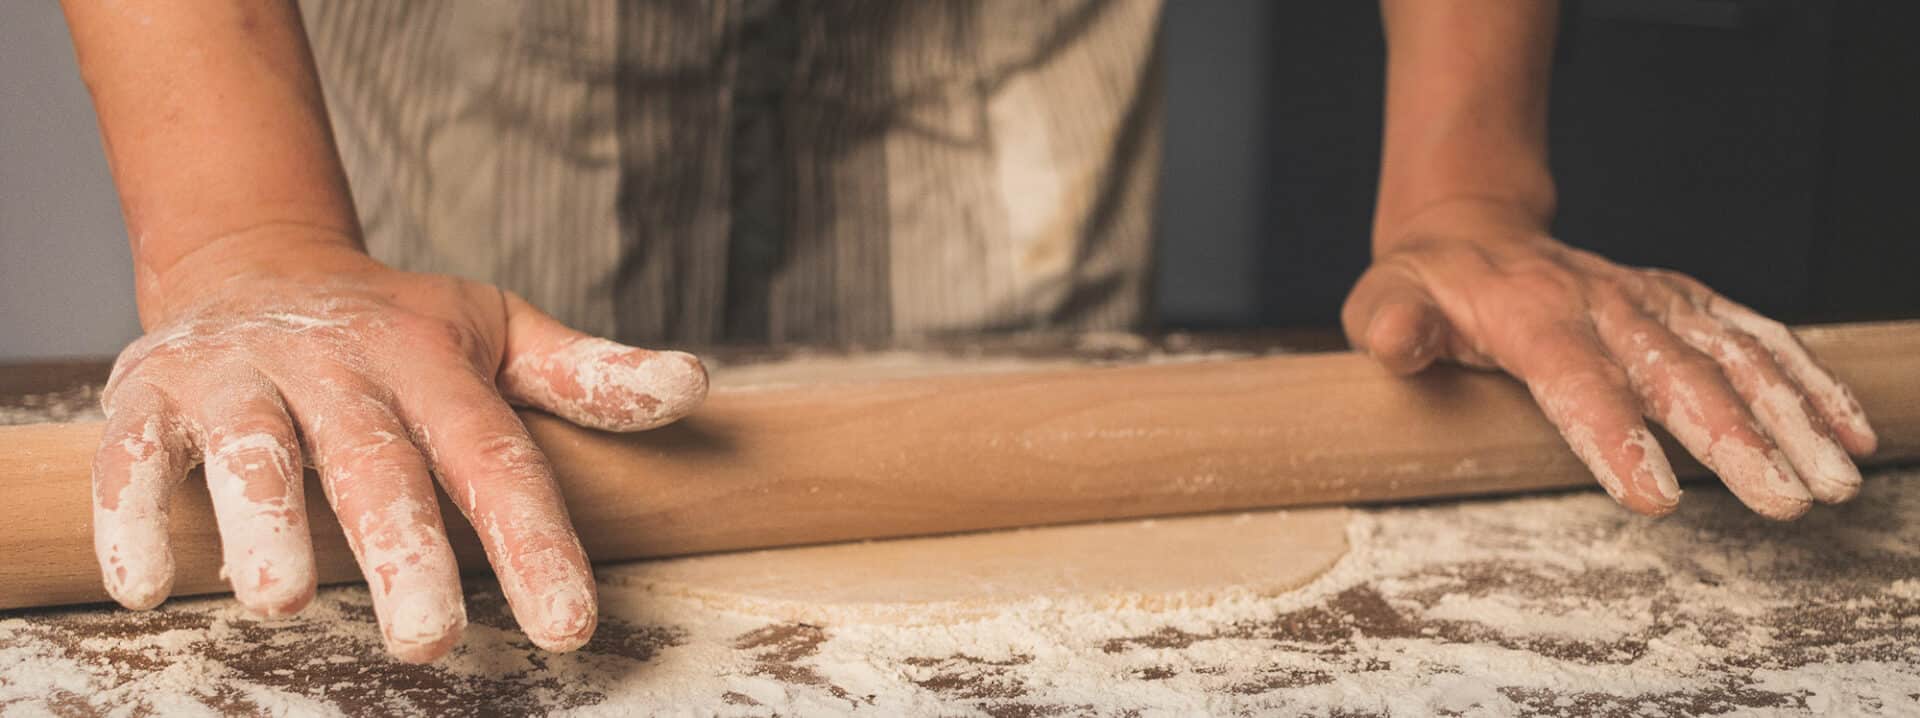 Das Nudelholz: Pasta selbst machen mit dem richtigen Pasta-Werkzeug.